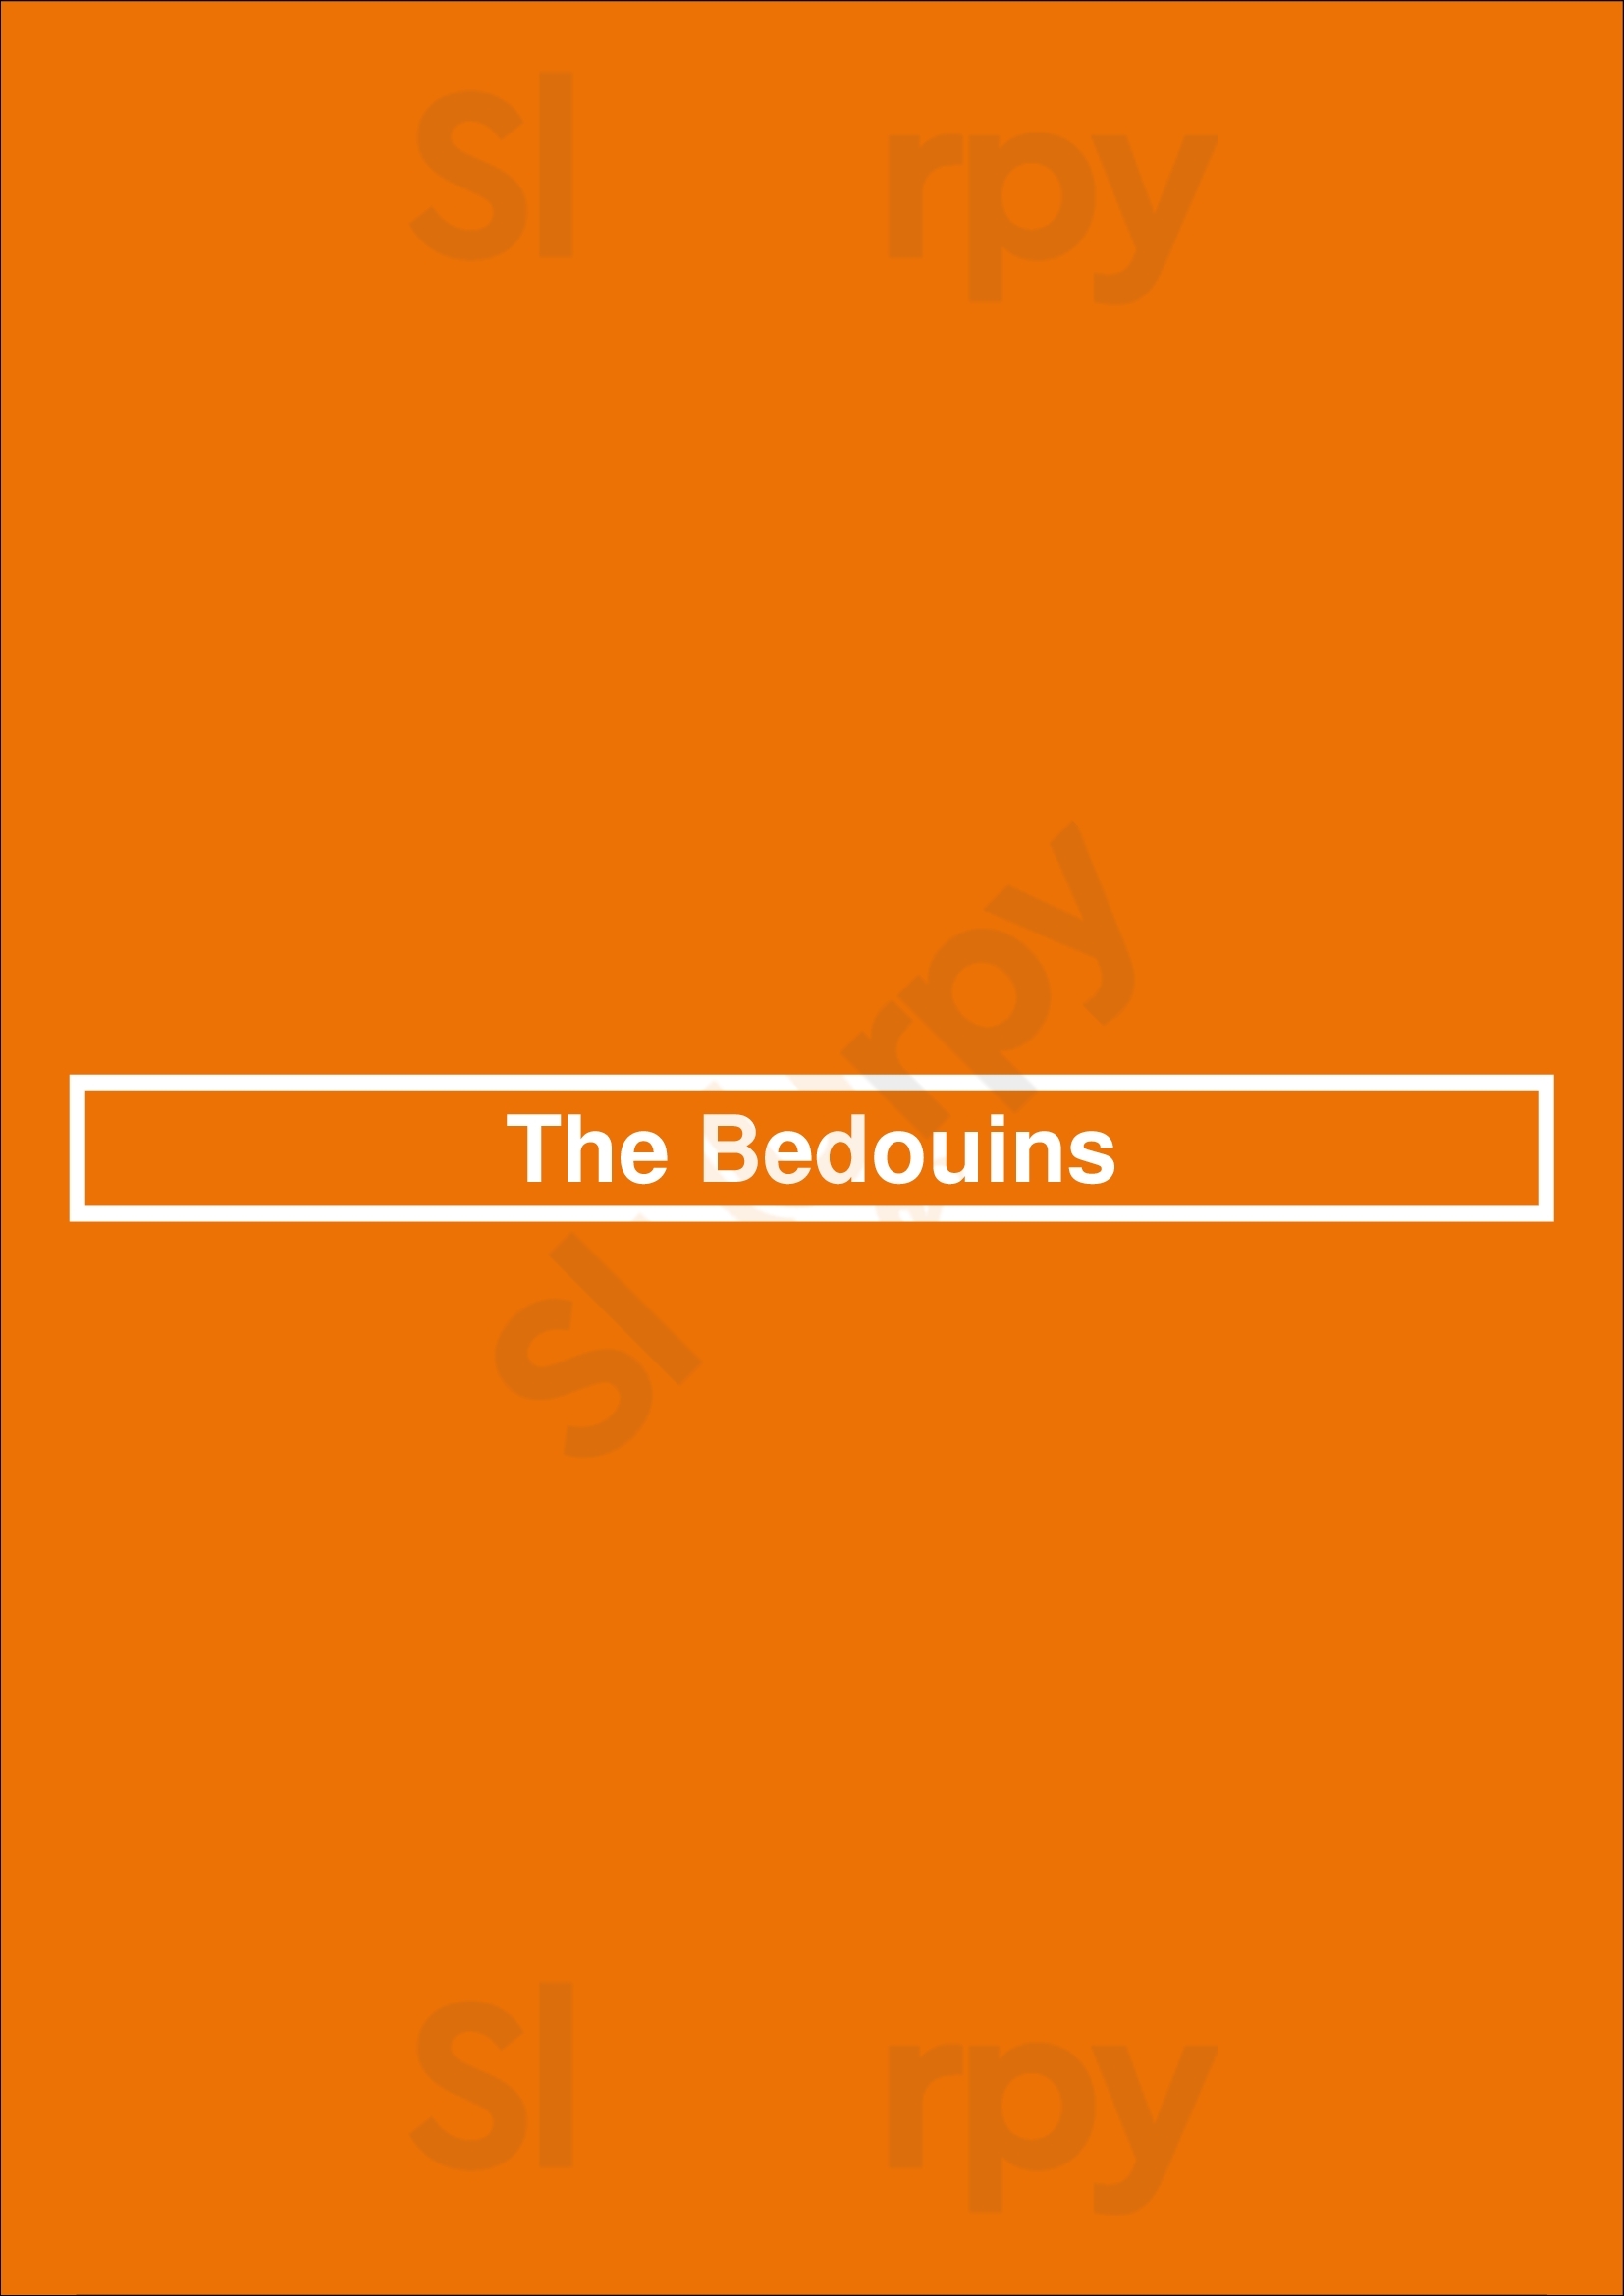 The Bedouins Edmonton Menu - 1